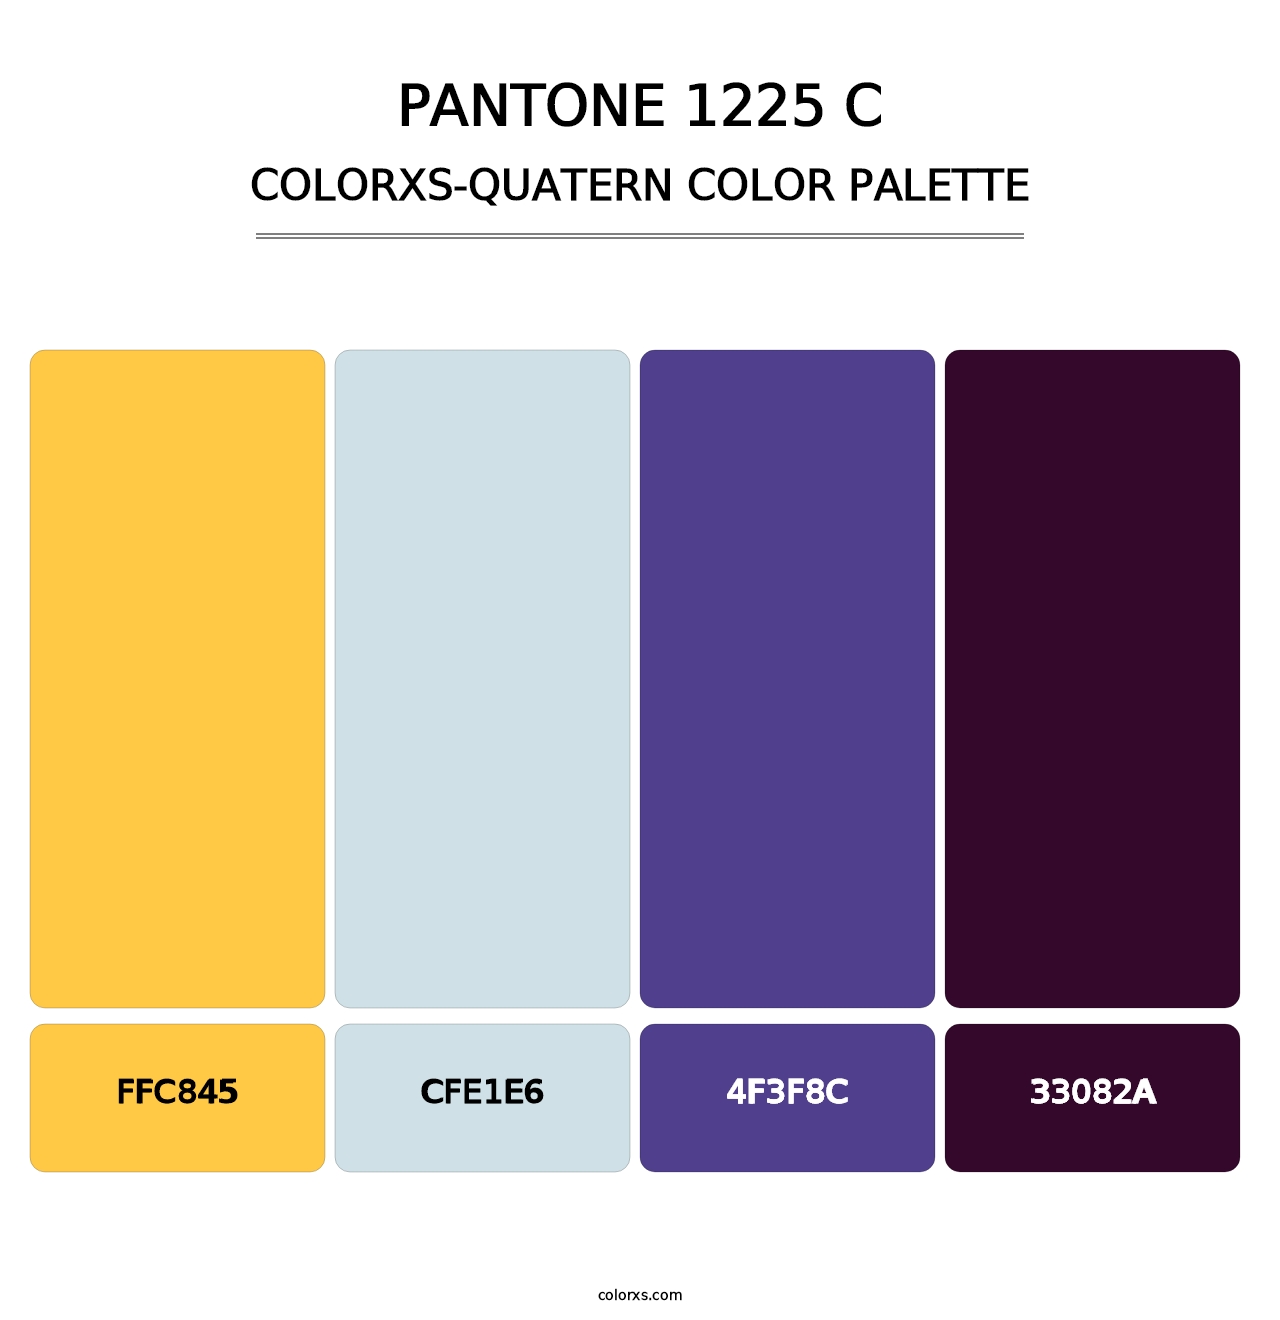 PANTONE 1225 C - Colorxs Quatern Palette